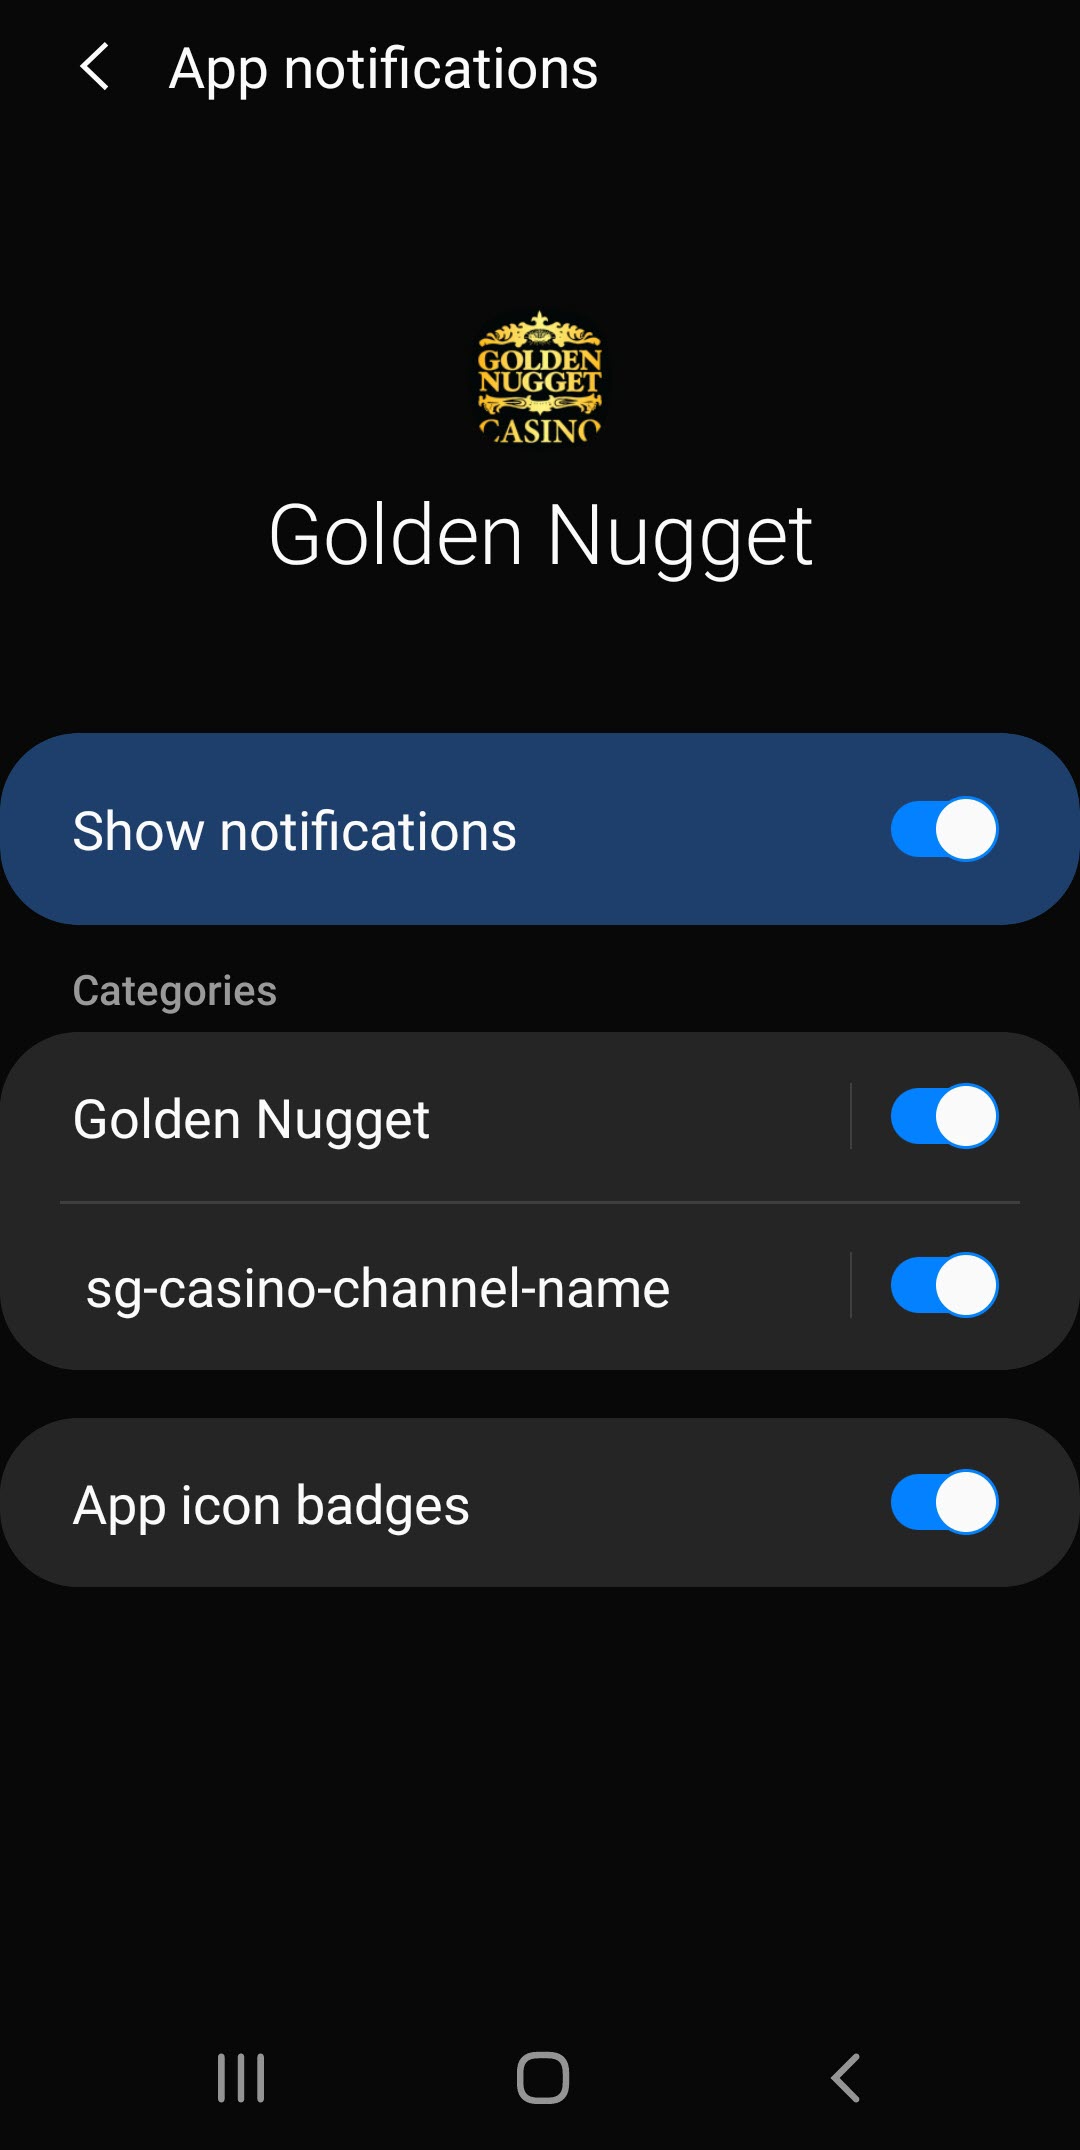 Golden Nugget App Notifications